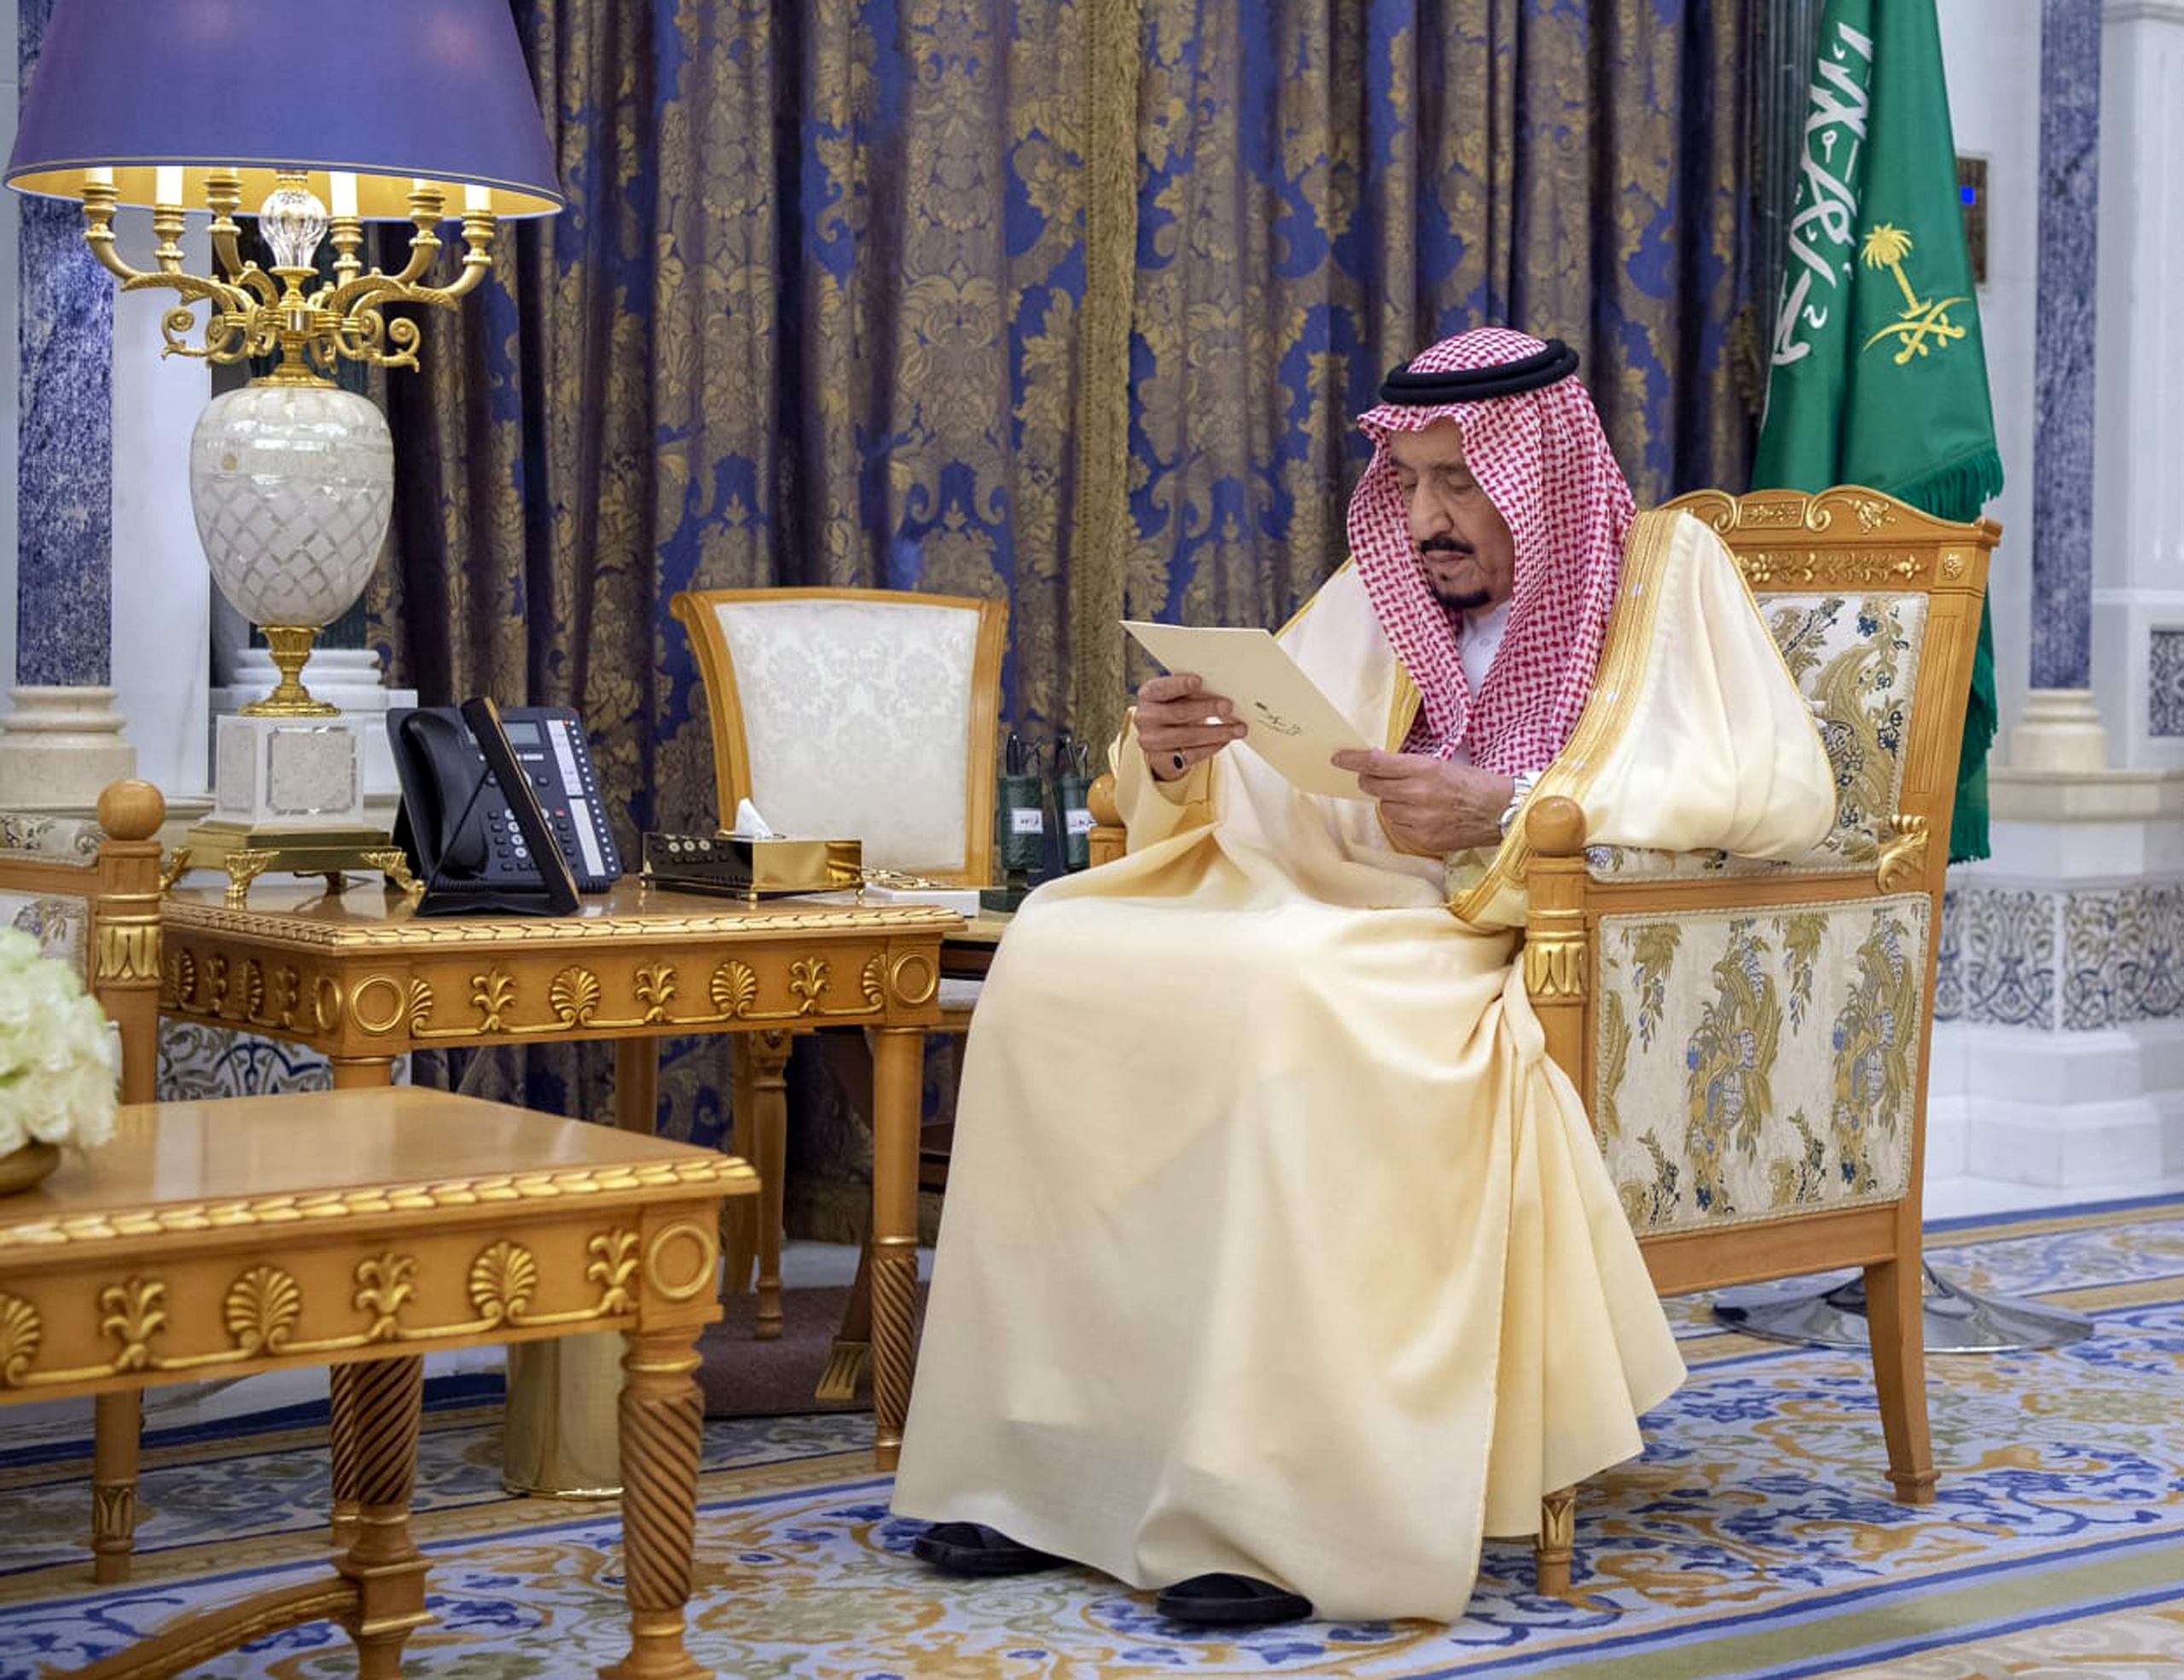 El decreto expande uno dictado por el rey Salman a fines del 2018, que establece penas máximas de 10 años de cárcel para menores de edad.